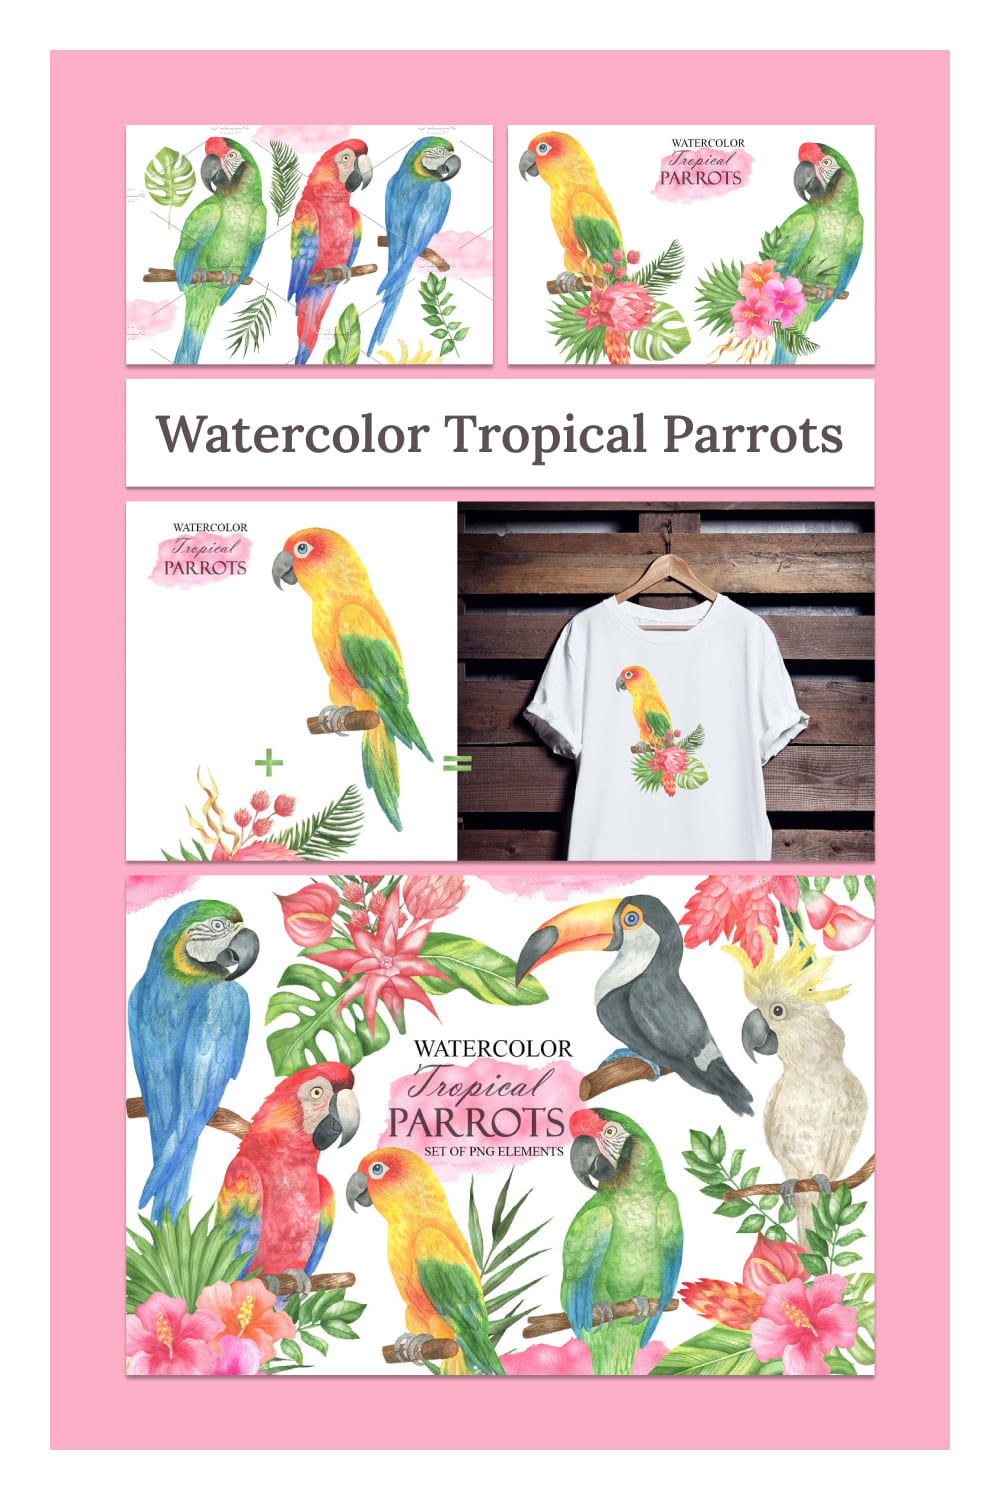 Watercolor tropical parrots - pinterest image preview.